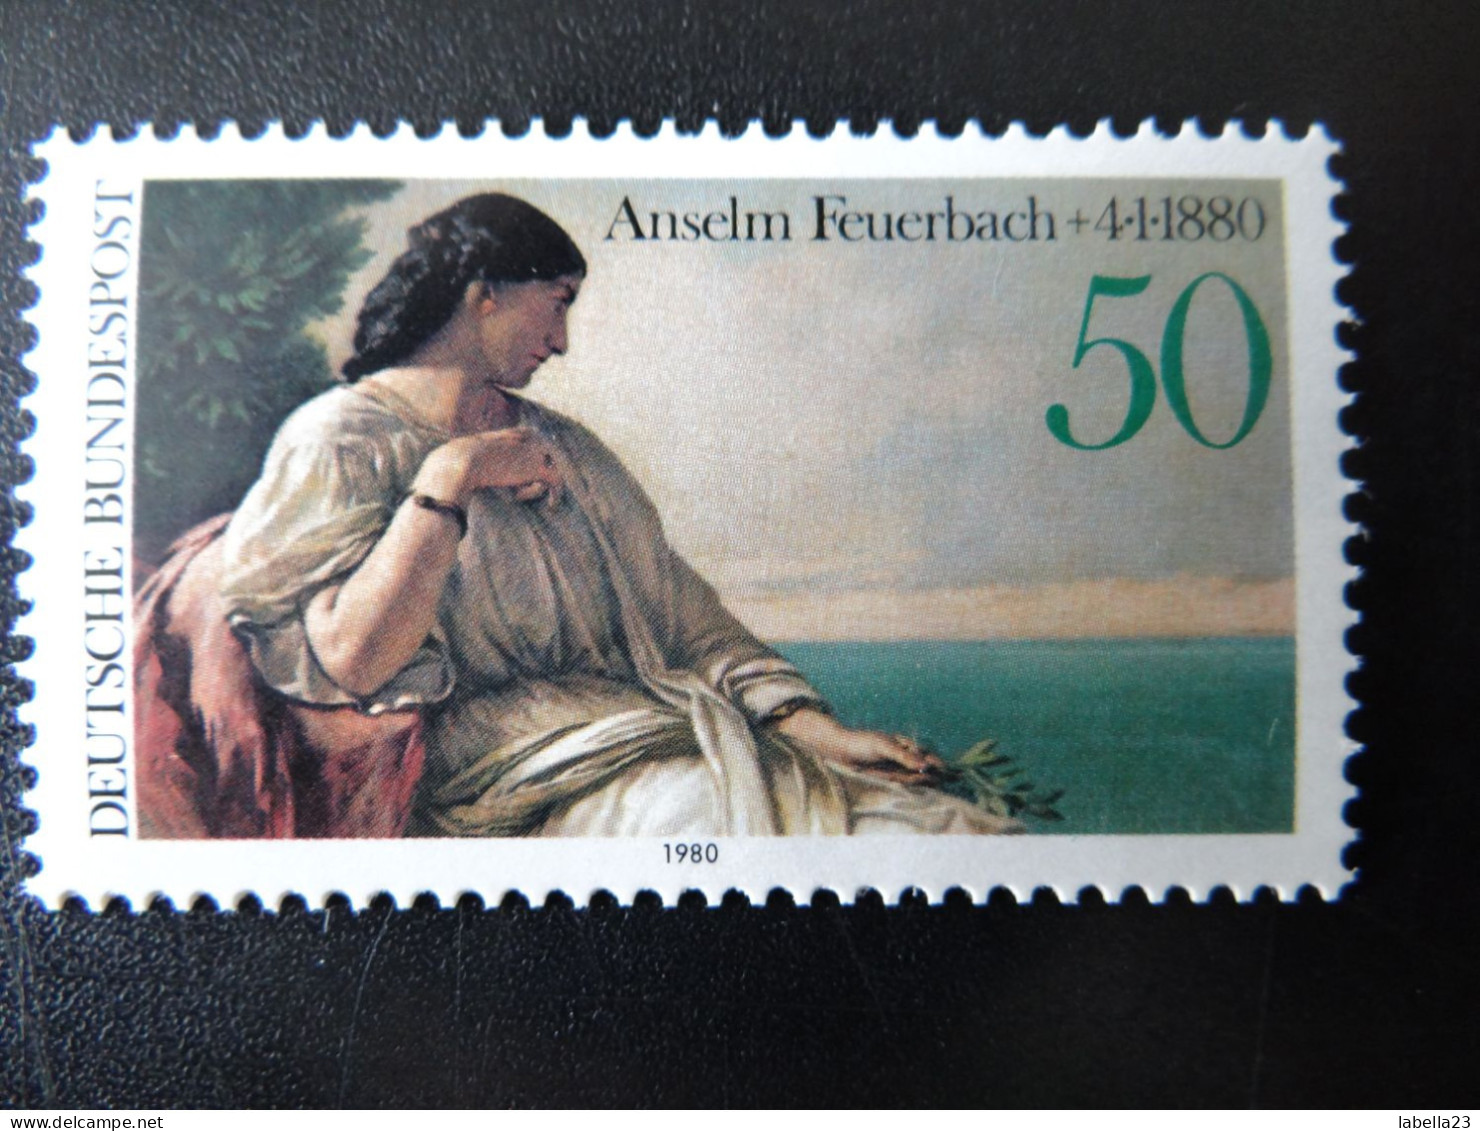 1980 Bund,  - Anselm Feuerbach - Iphigenie - Postfrisch - MiNr. 1033 - Impressionismo